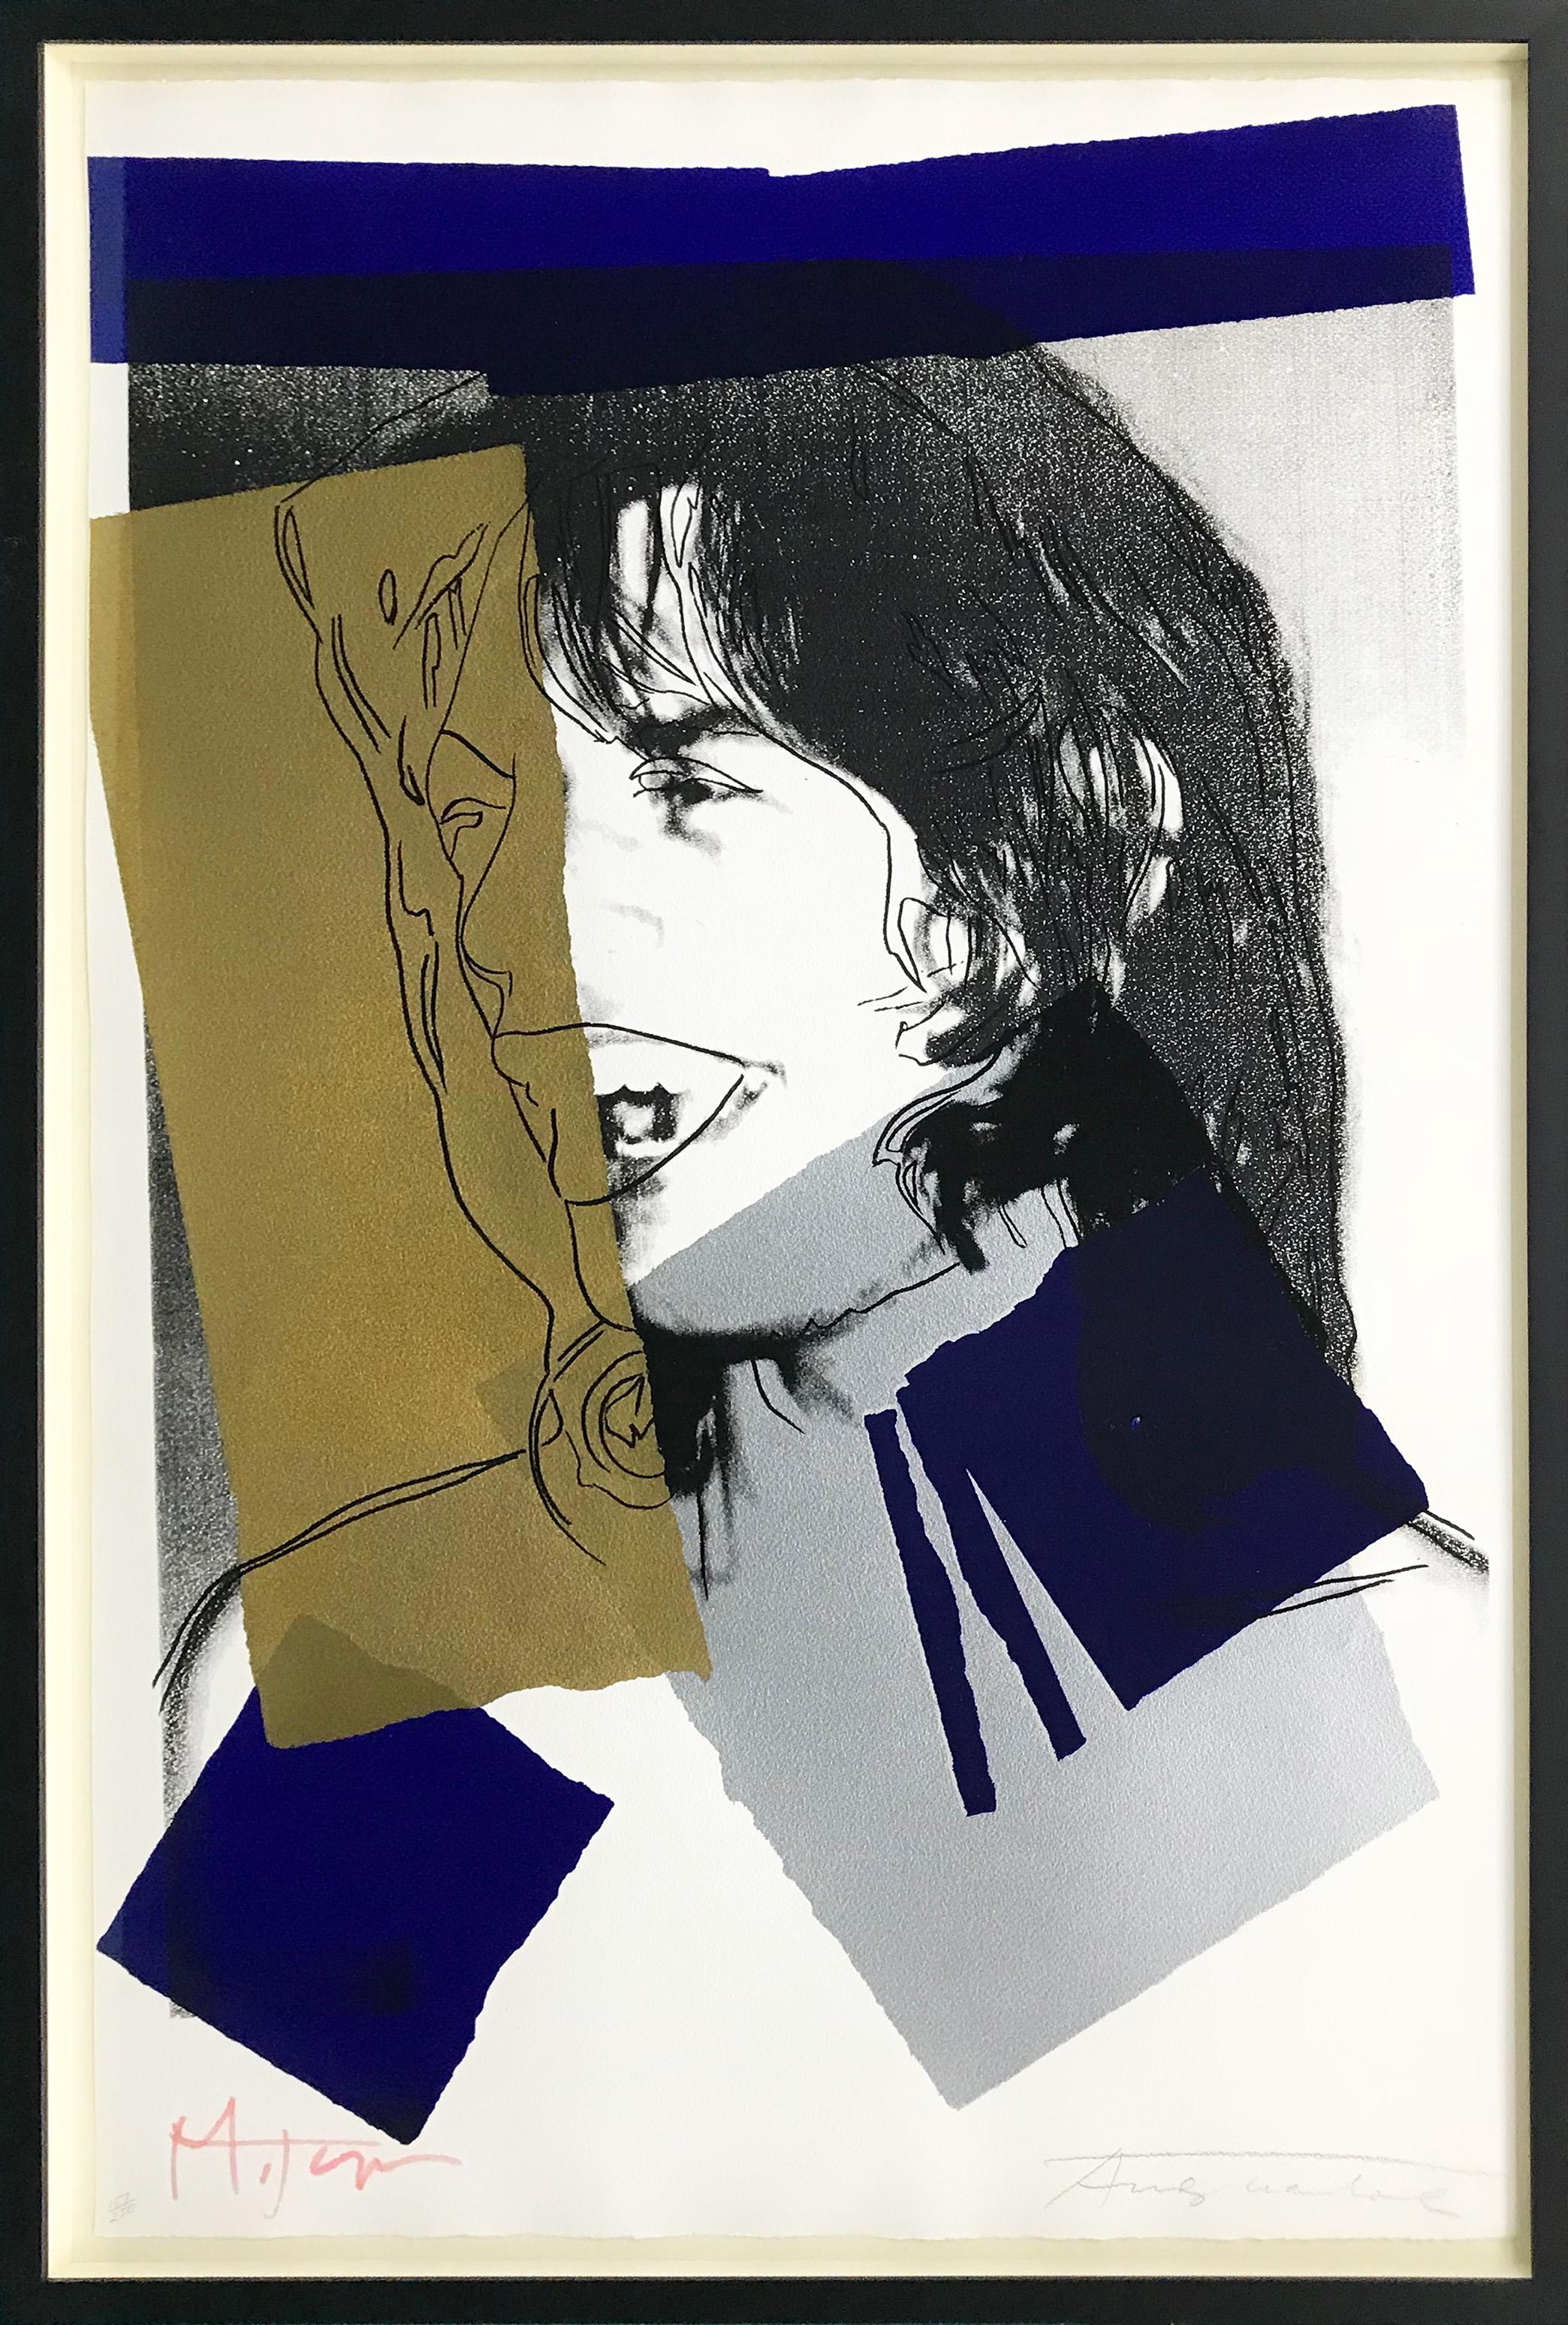 Andy Warhol Portrait Print – JAGGER FS II.142, MICK